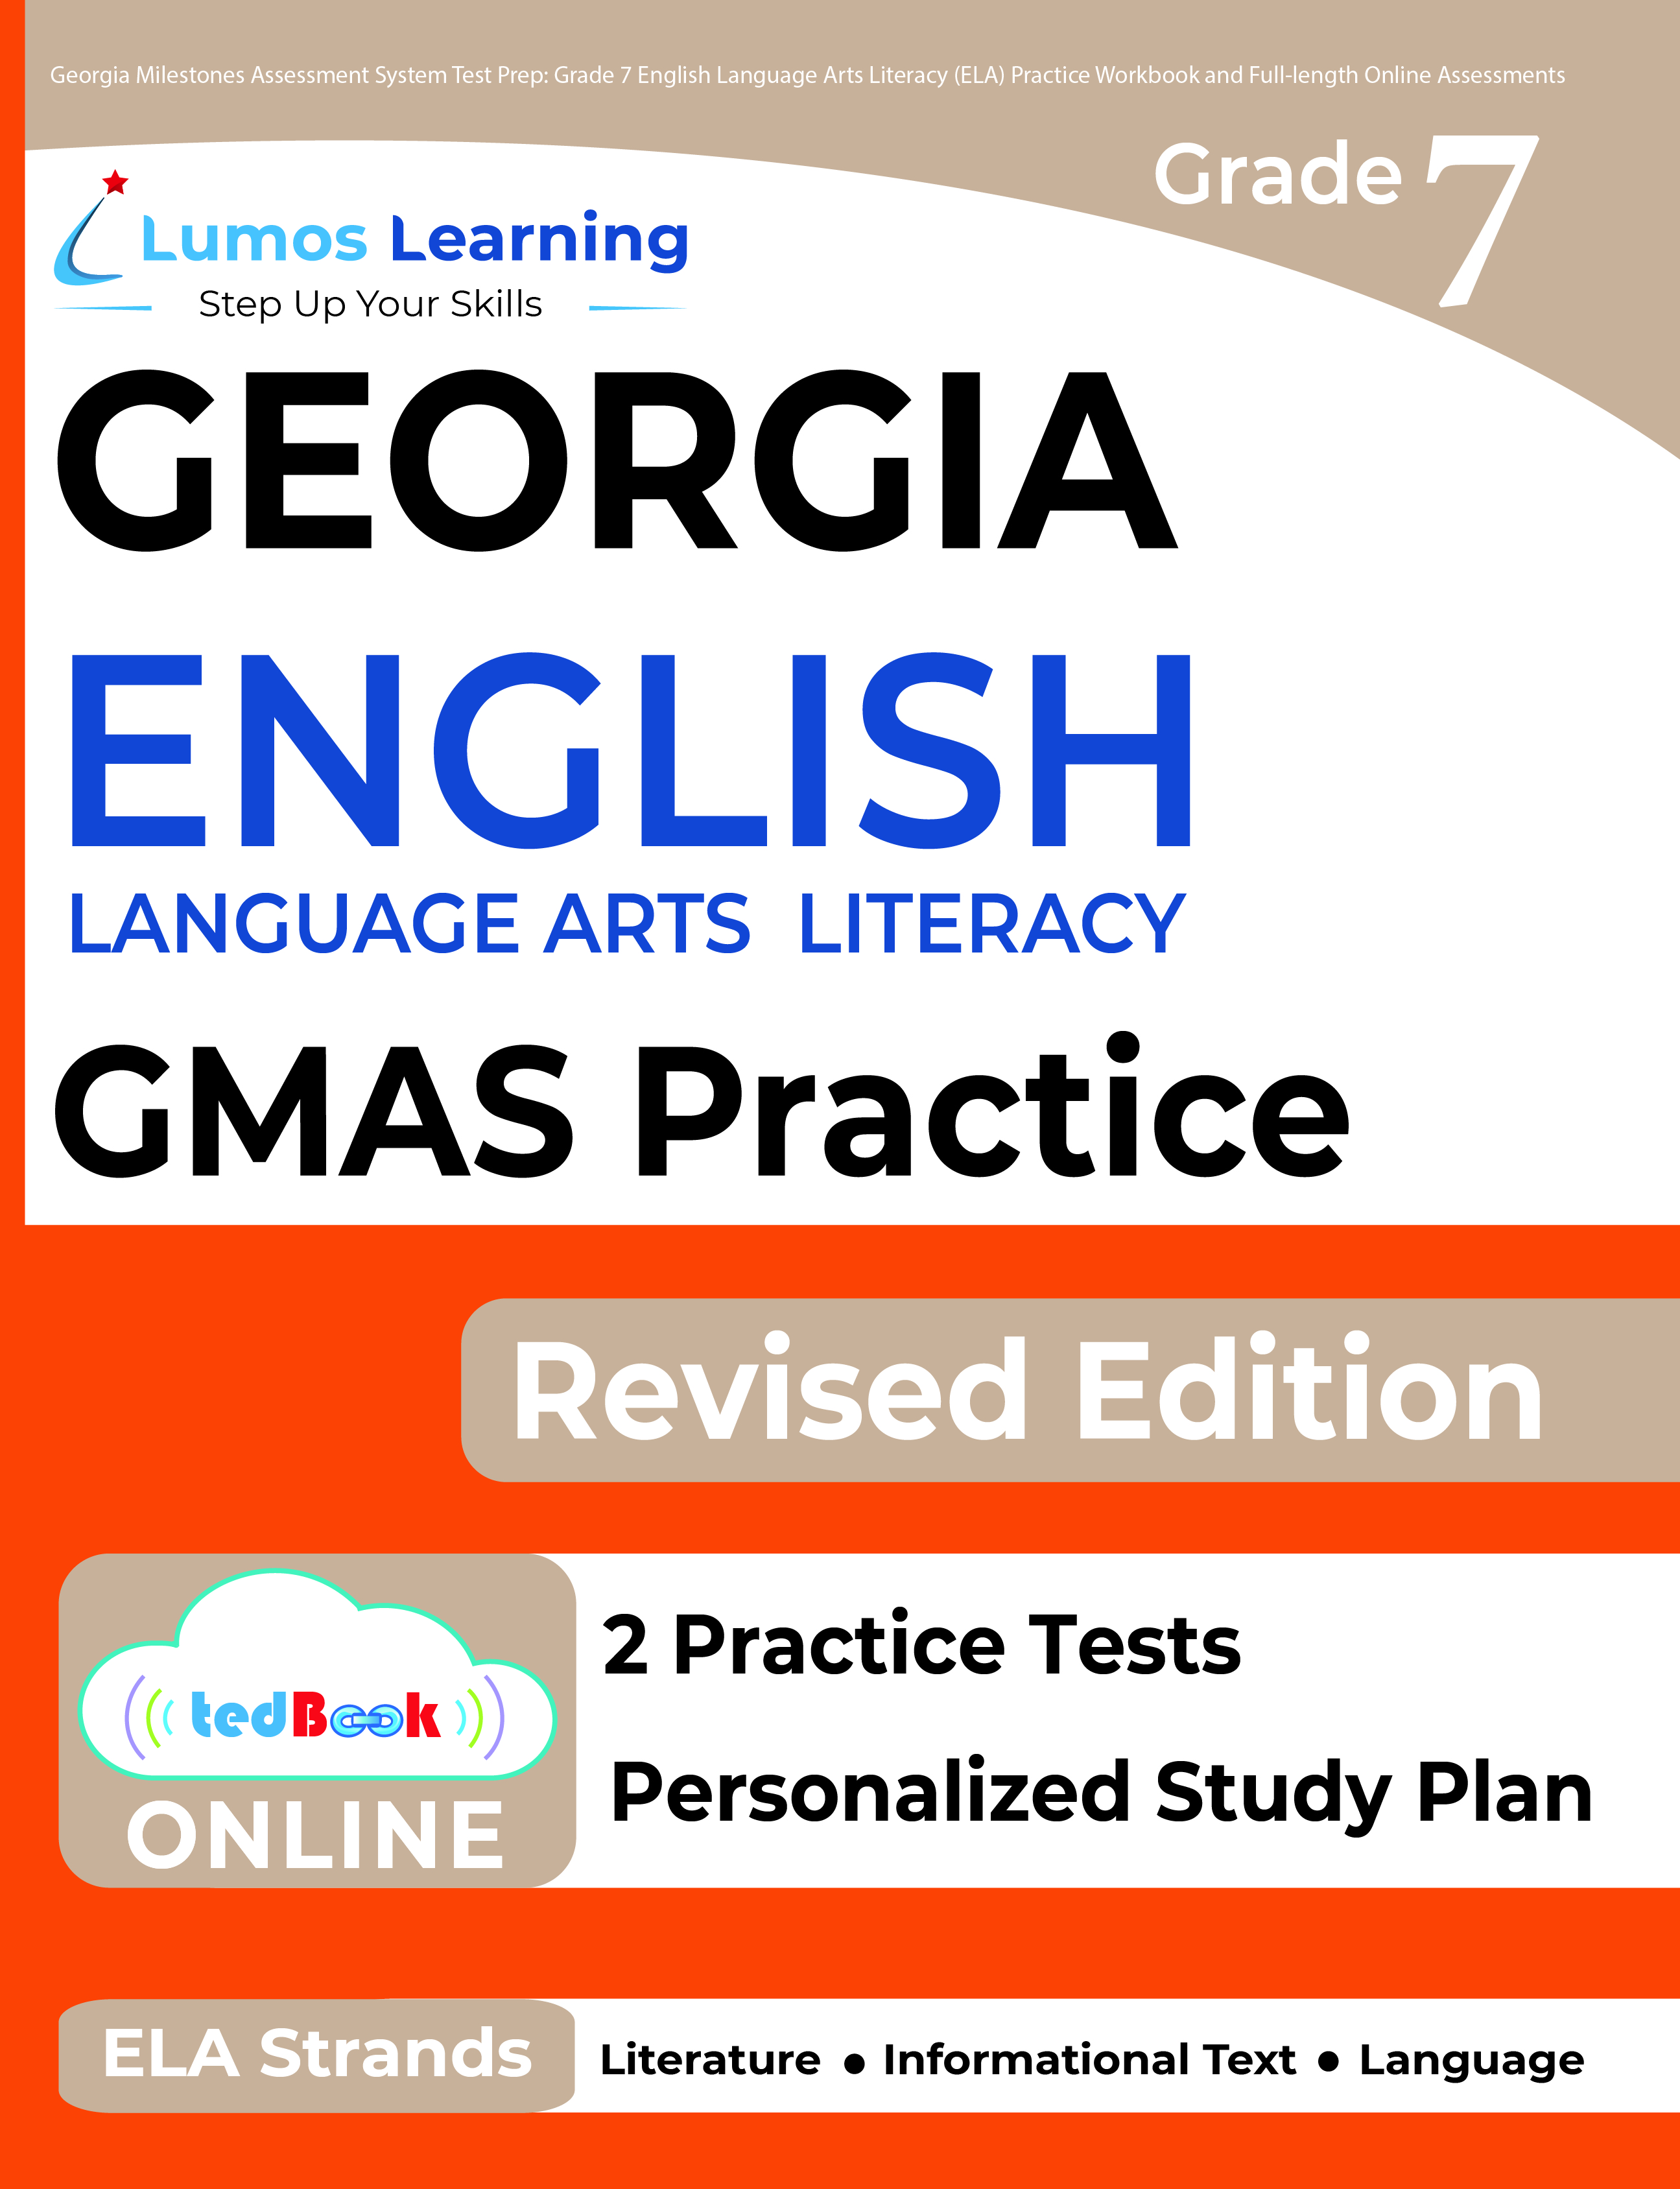 Grade 7 ELA gmas test prep workbooks